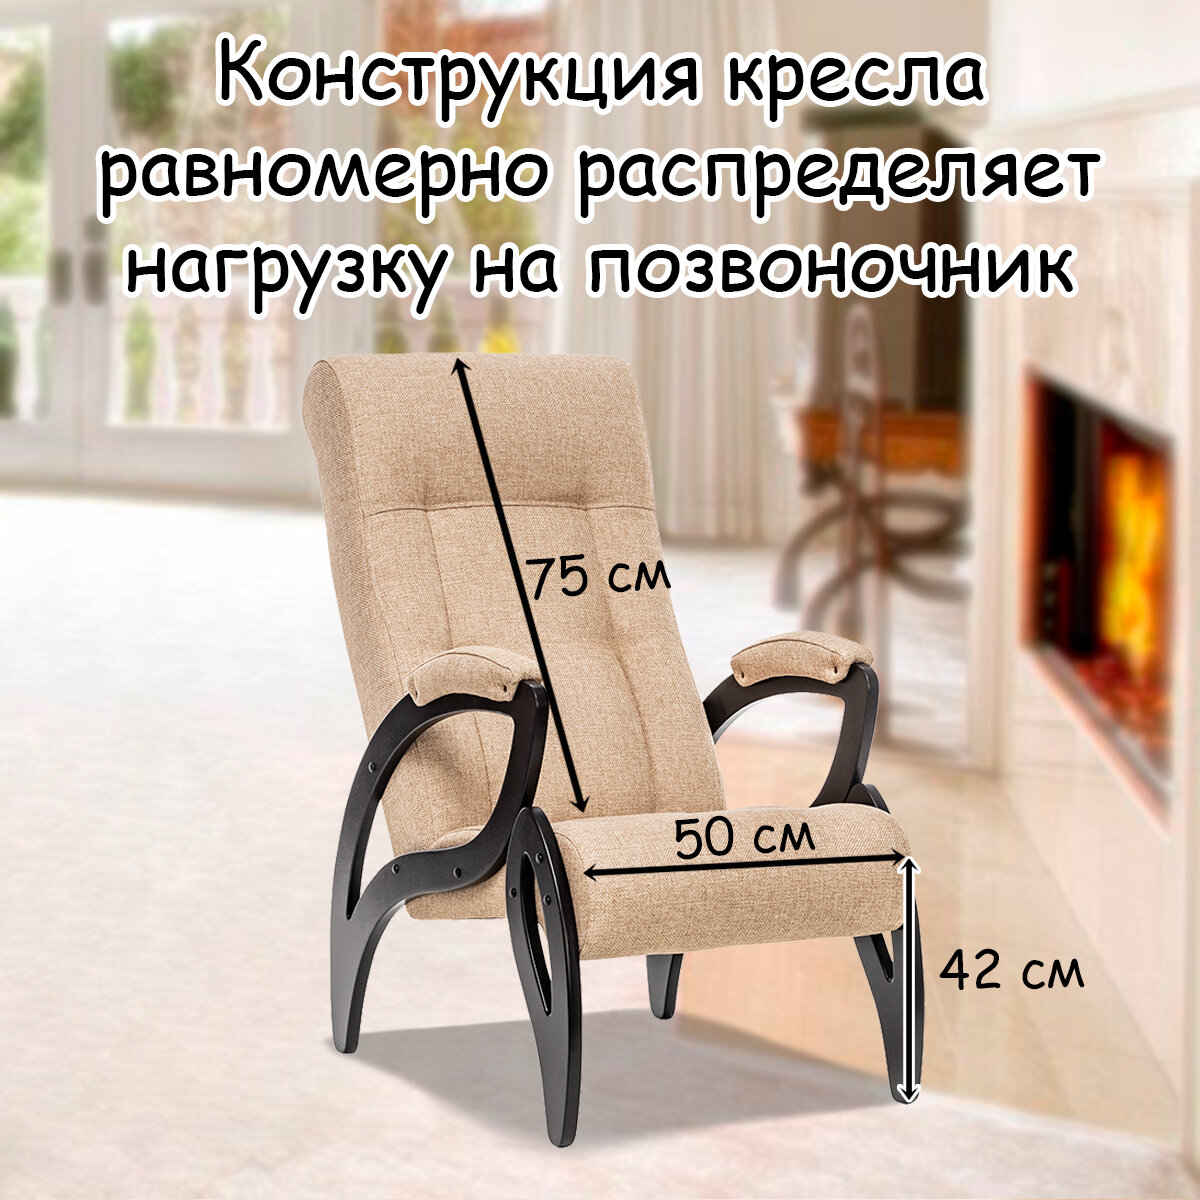 Кресло для взрослых 58.5х87х99 см, модель 51, malta, цвет: Мalta 03А (бежевый), каркас: Venge (черный) - фотография № 2